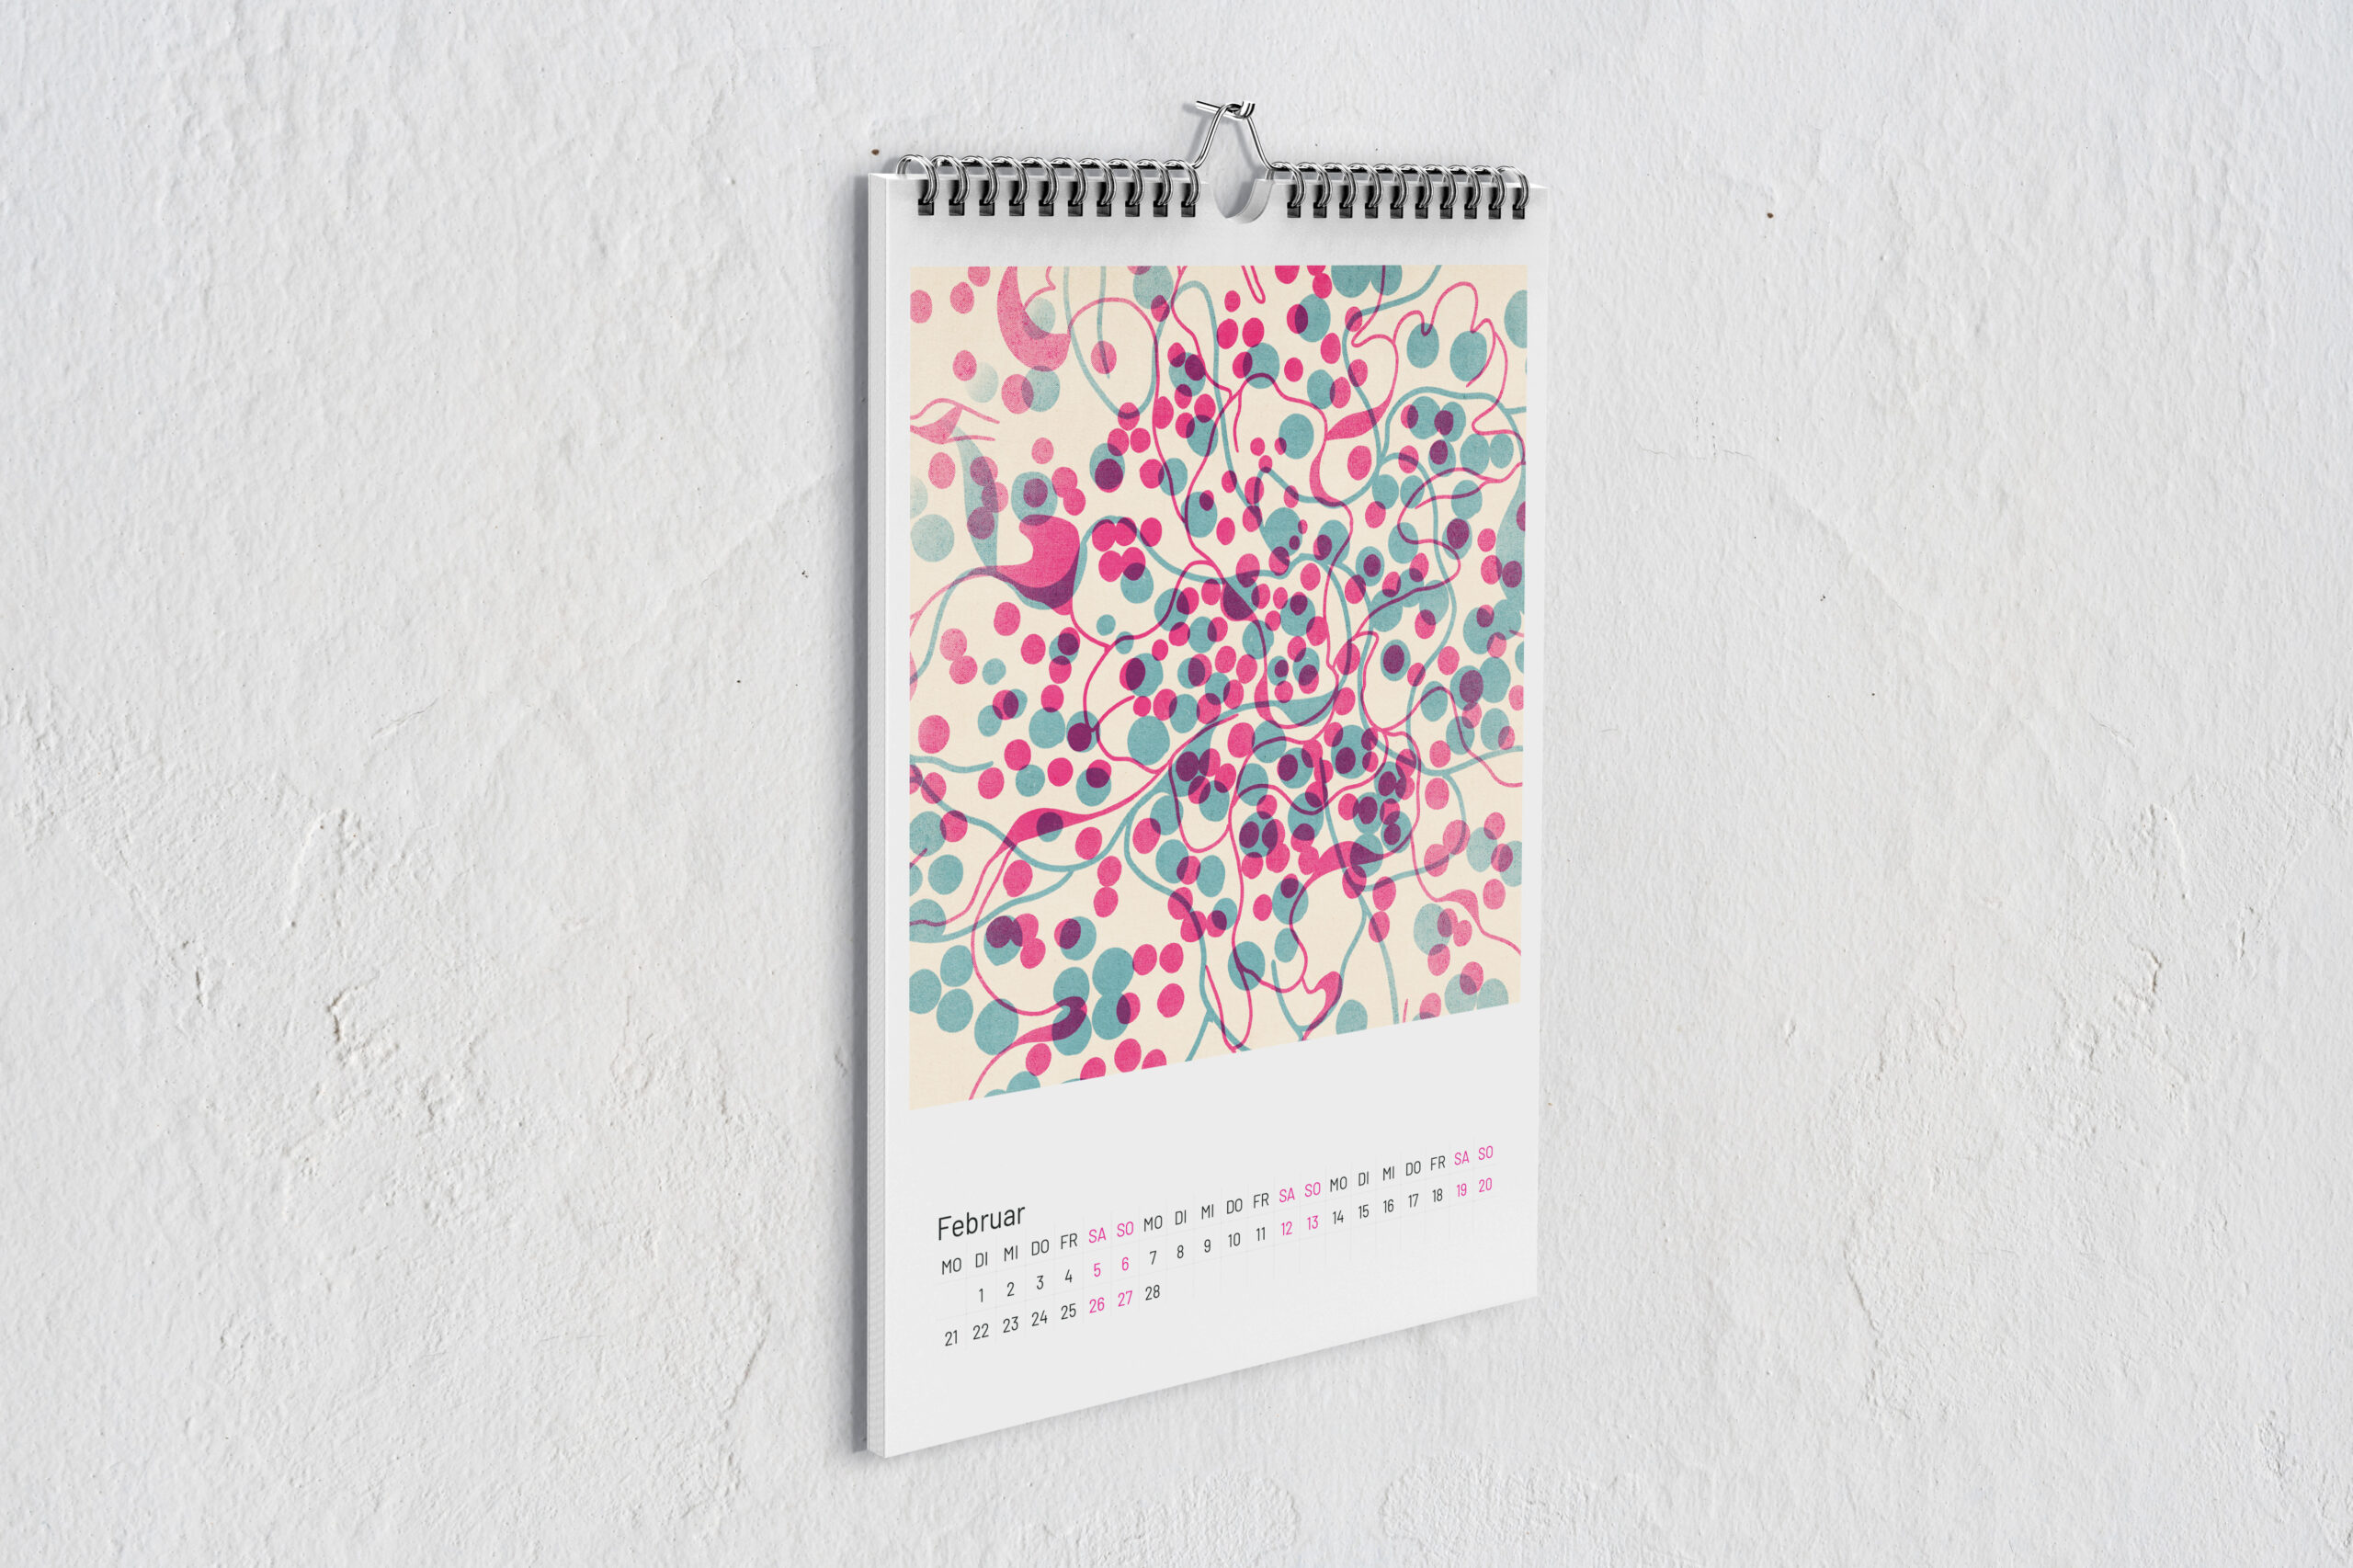 Kalenderblatt Flechten für Februar mit zwei digitalen Zeichnungen im Risografie Stil. Die Zeichnungen in pink und blau überlagern sich